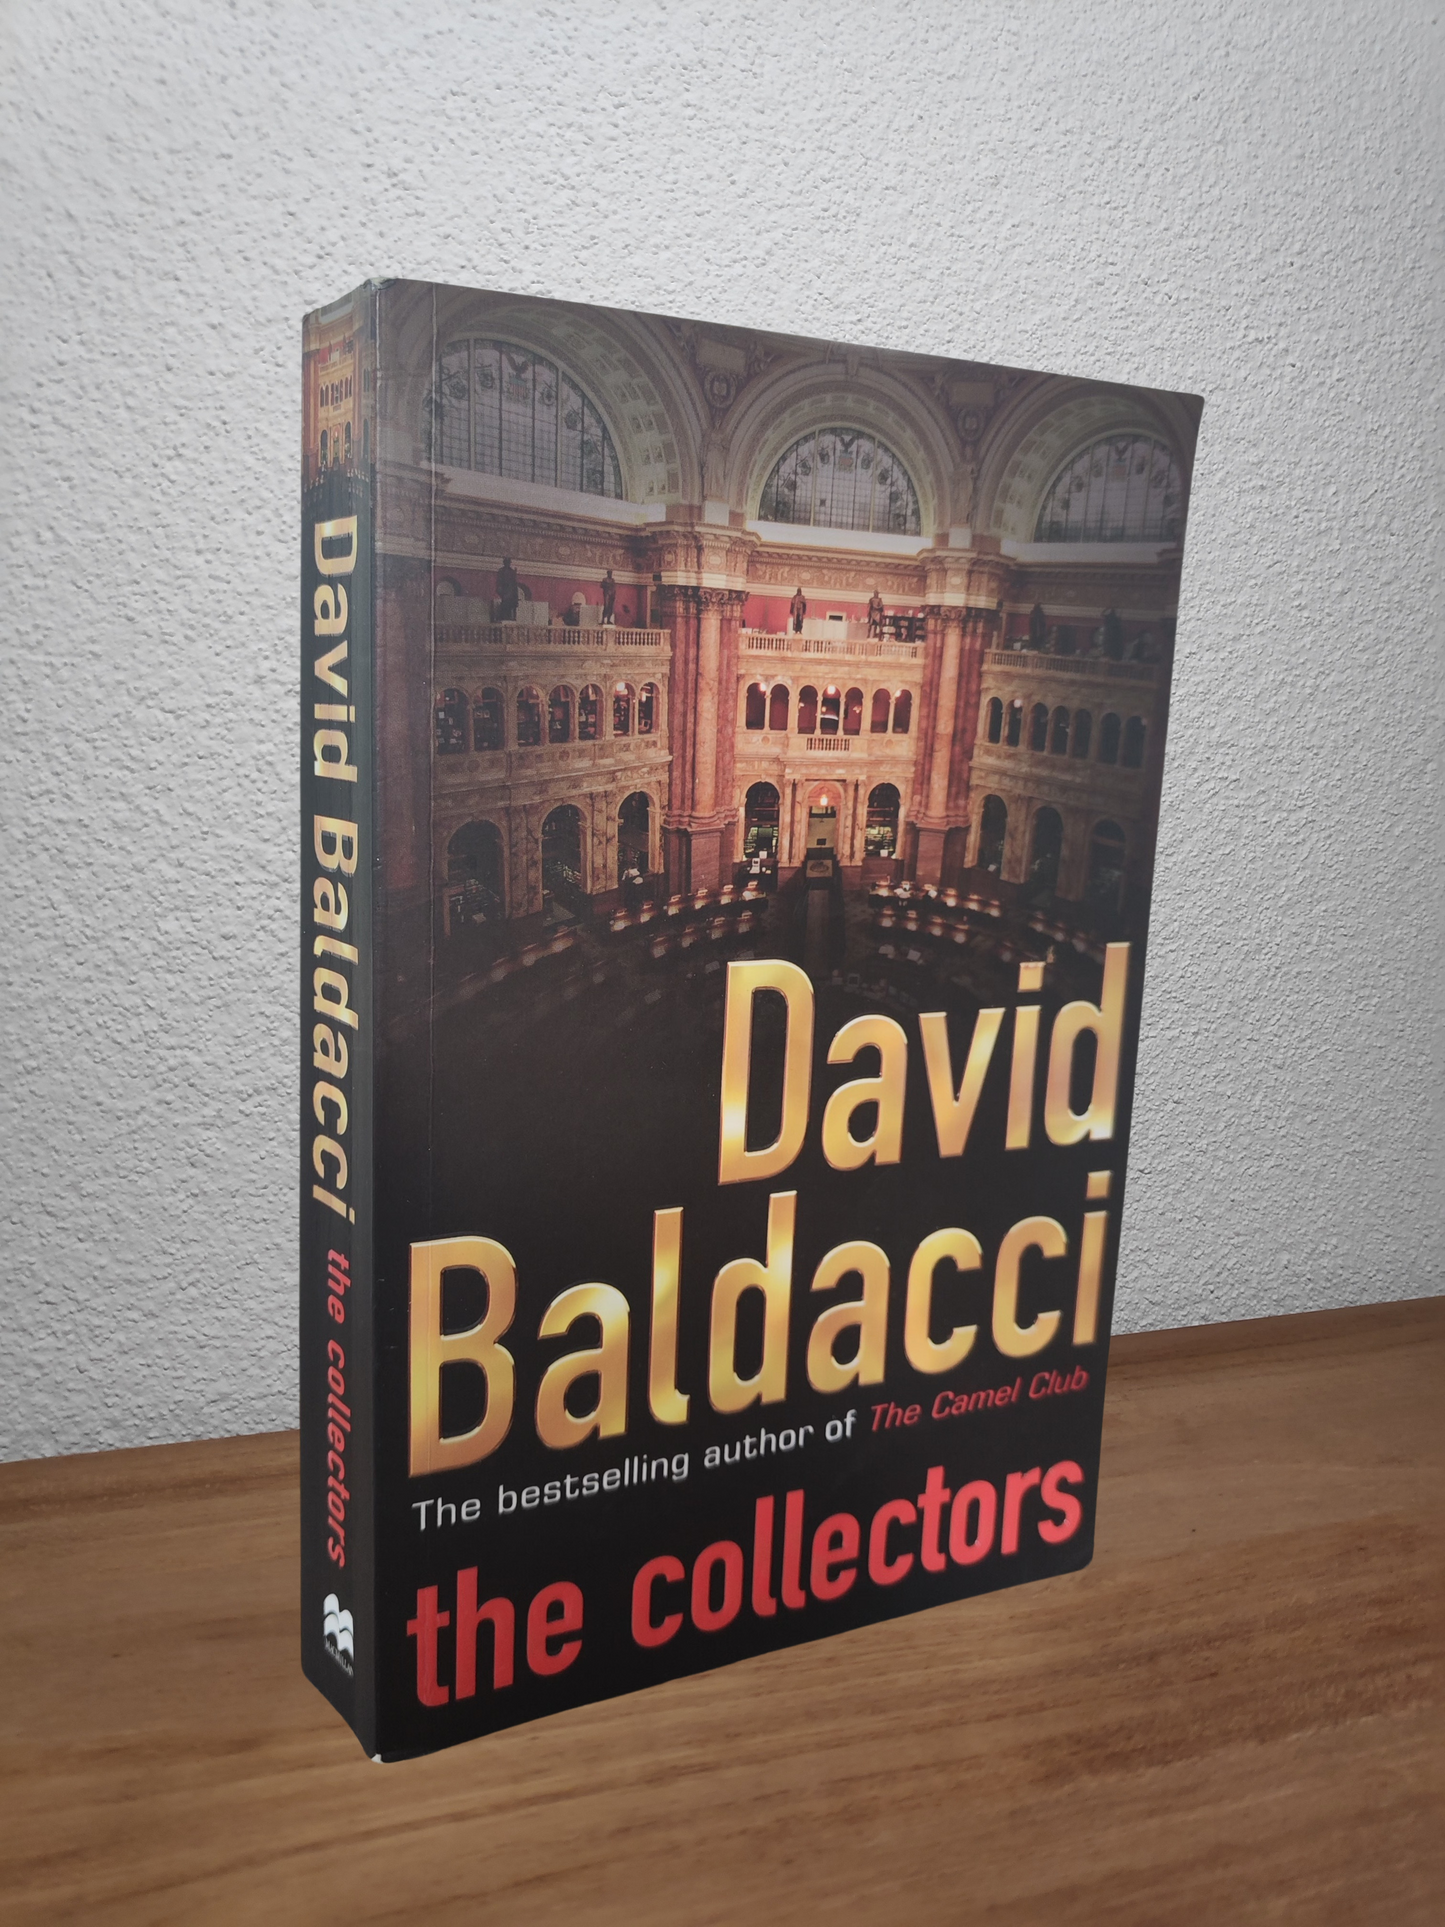 David Baldacci - The Collectors (The Camel Club #2)